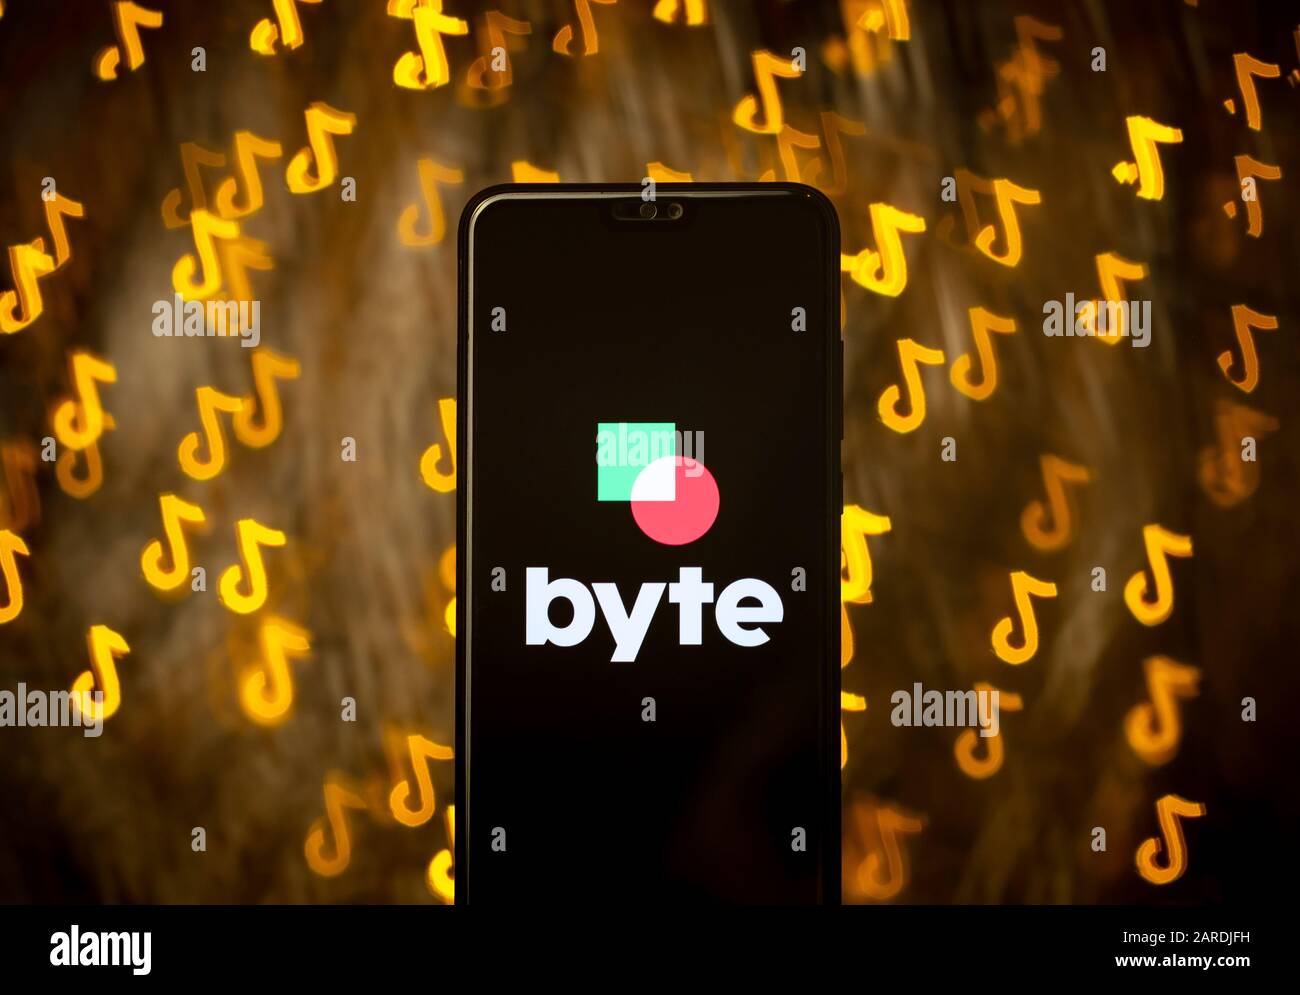 Logo de l'application BYTE sur smartphone et bokeh sous la forme du logo TikTok en arrière-plan. Pas un montage. Pas de retouche photo. La technique de forme bokeh personnalisée est utilisée. Banque D'Images